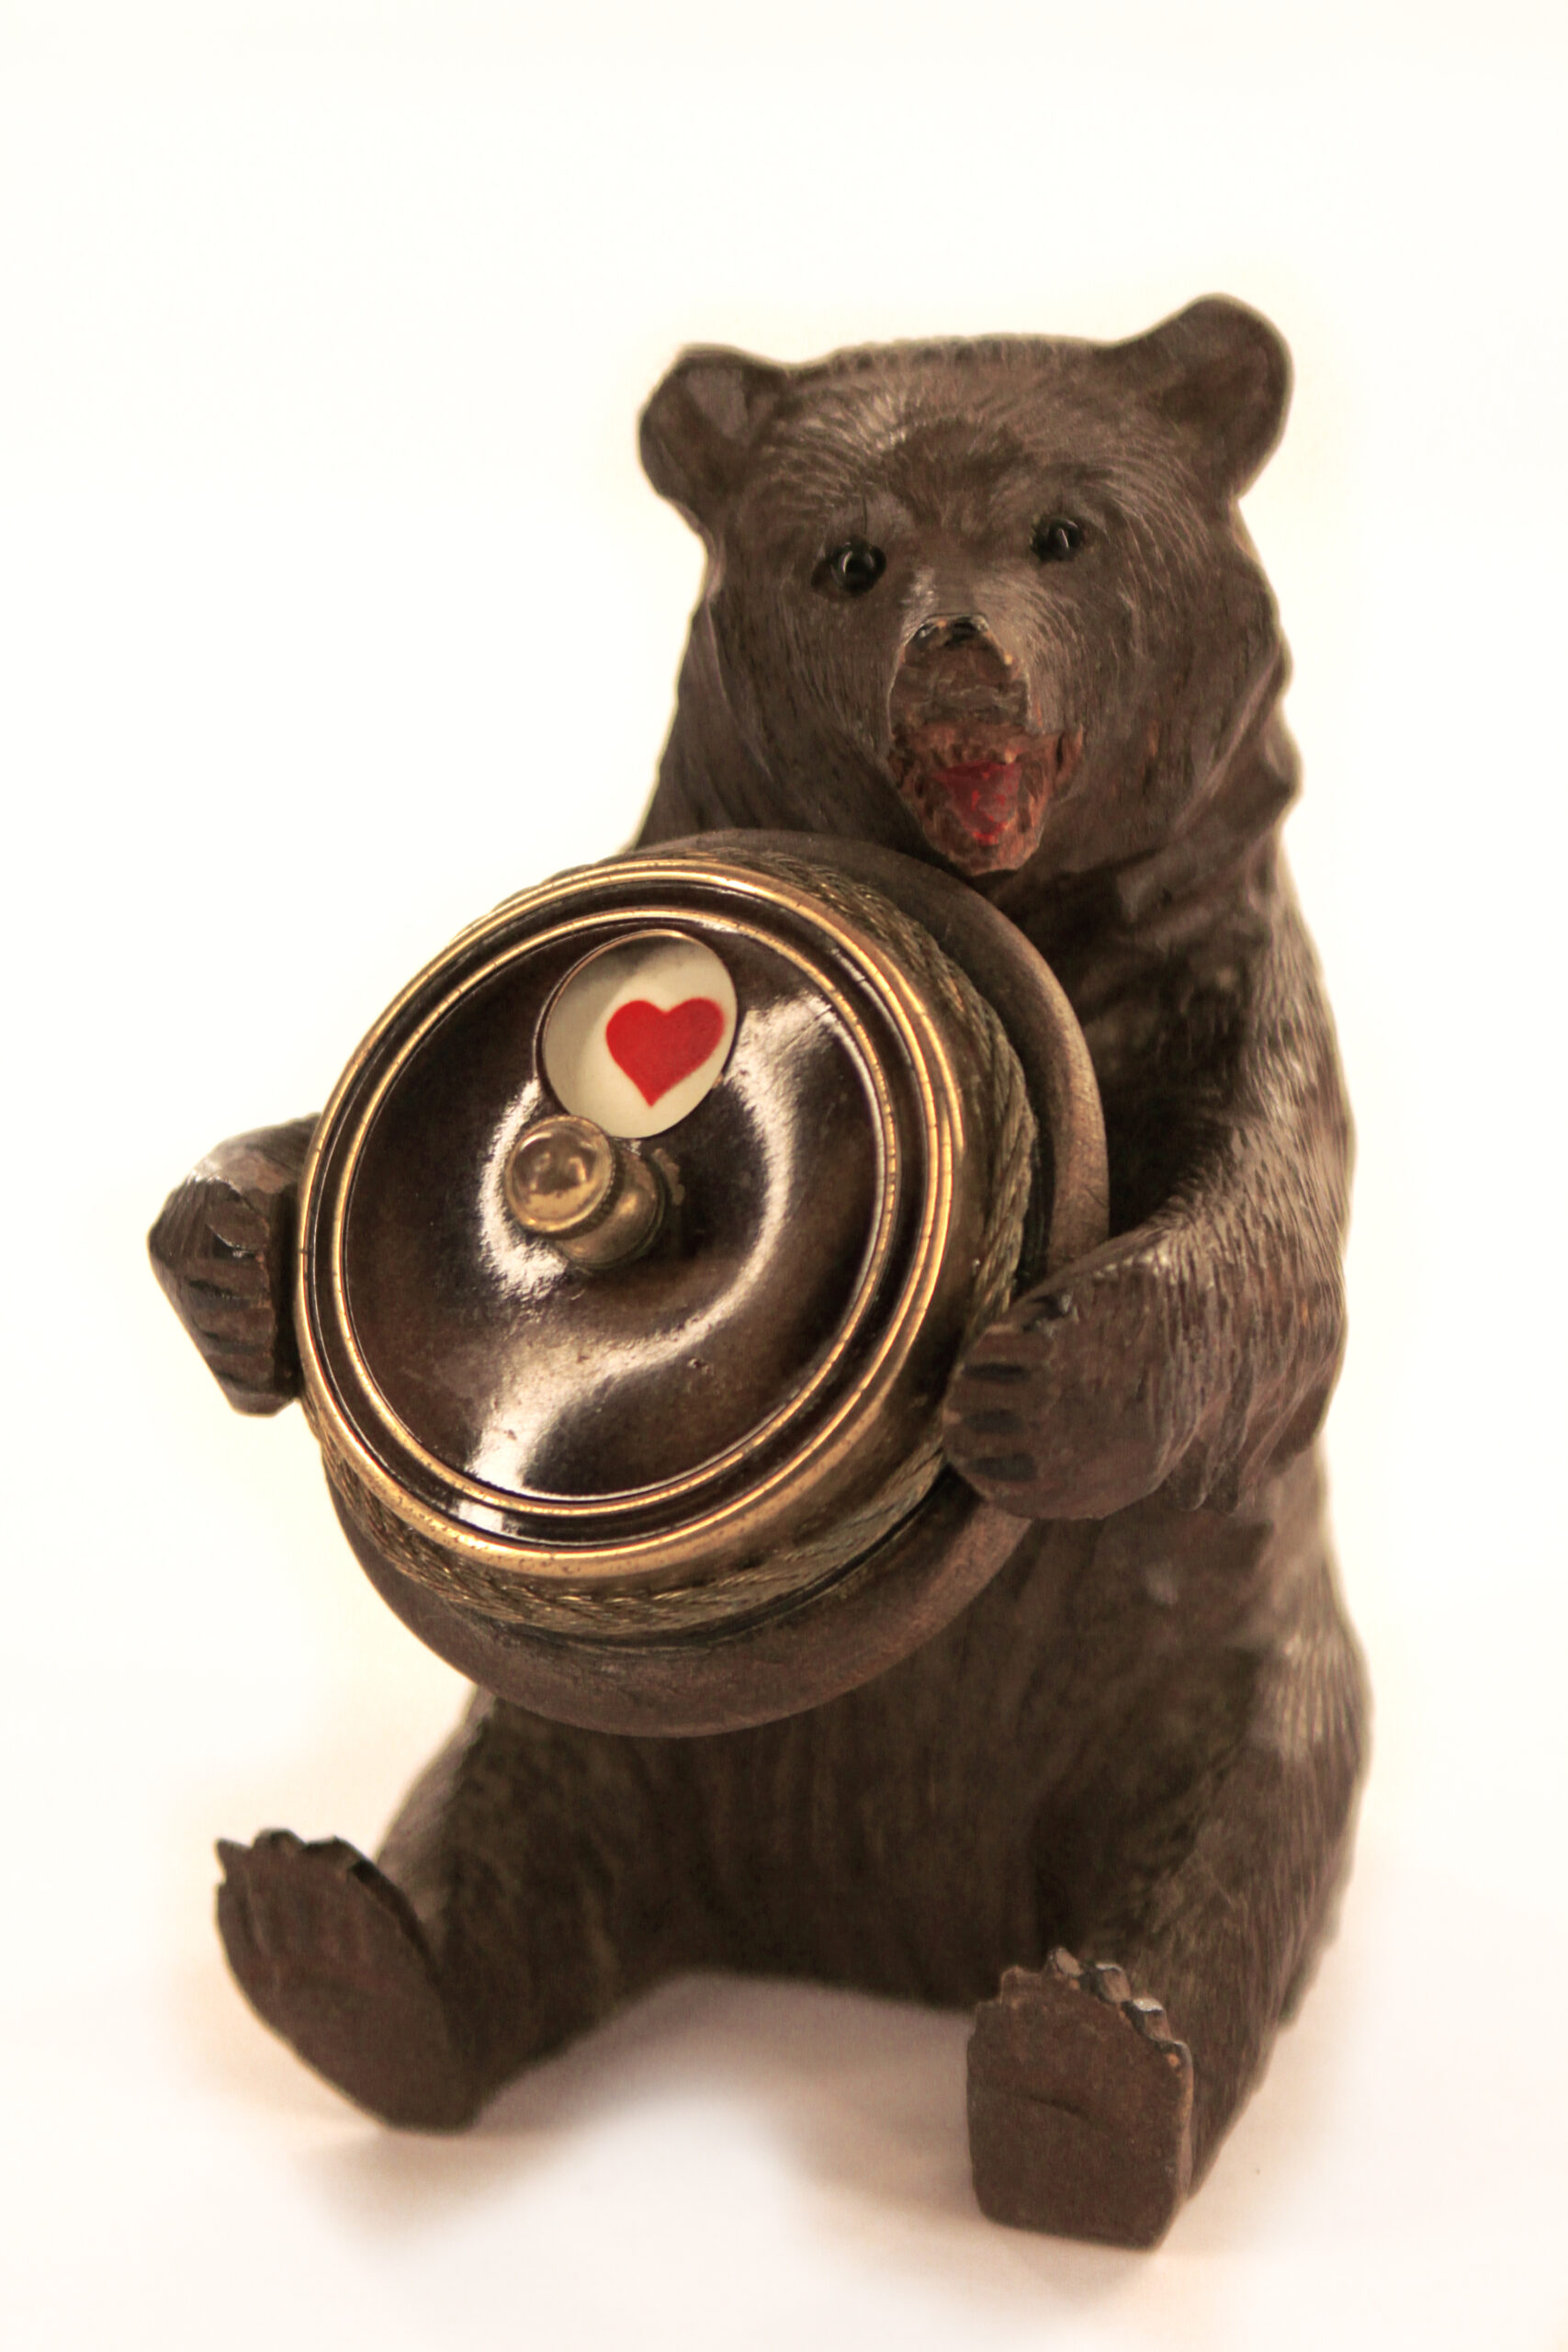 Een foto van een beeldje van een beer, zittend op zijn kont. De Beer heeft een rond voorwerp in zijn poten met daarop een hartje, een van de symbolen van een kaartspel